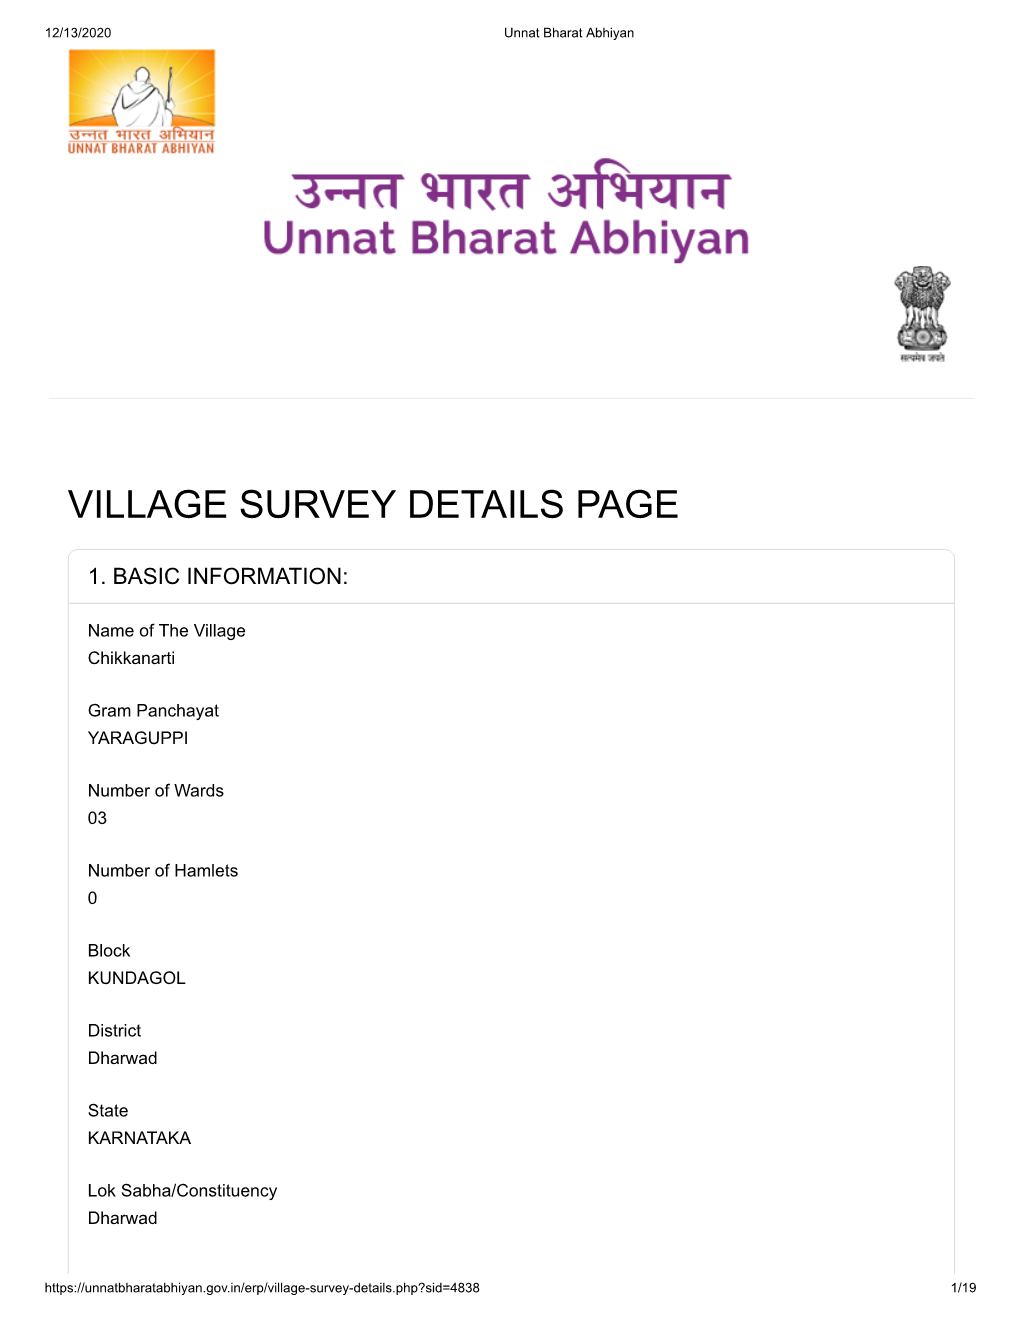 Village Survey Details Page